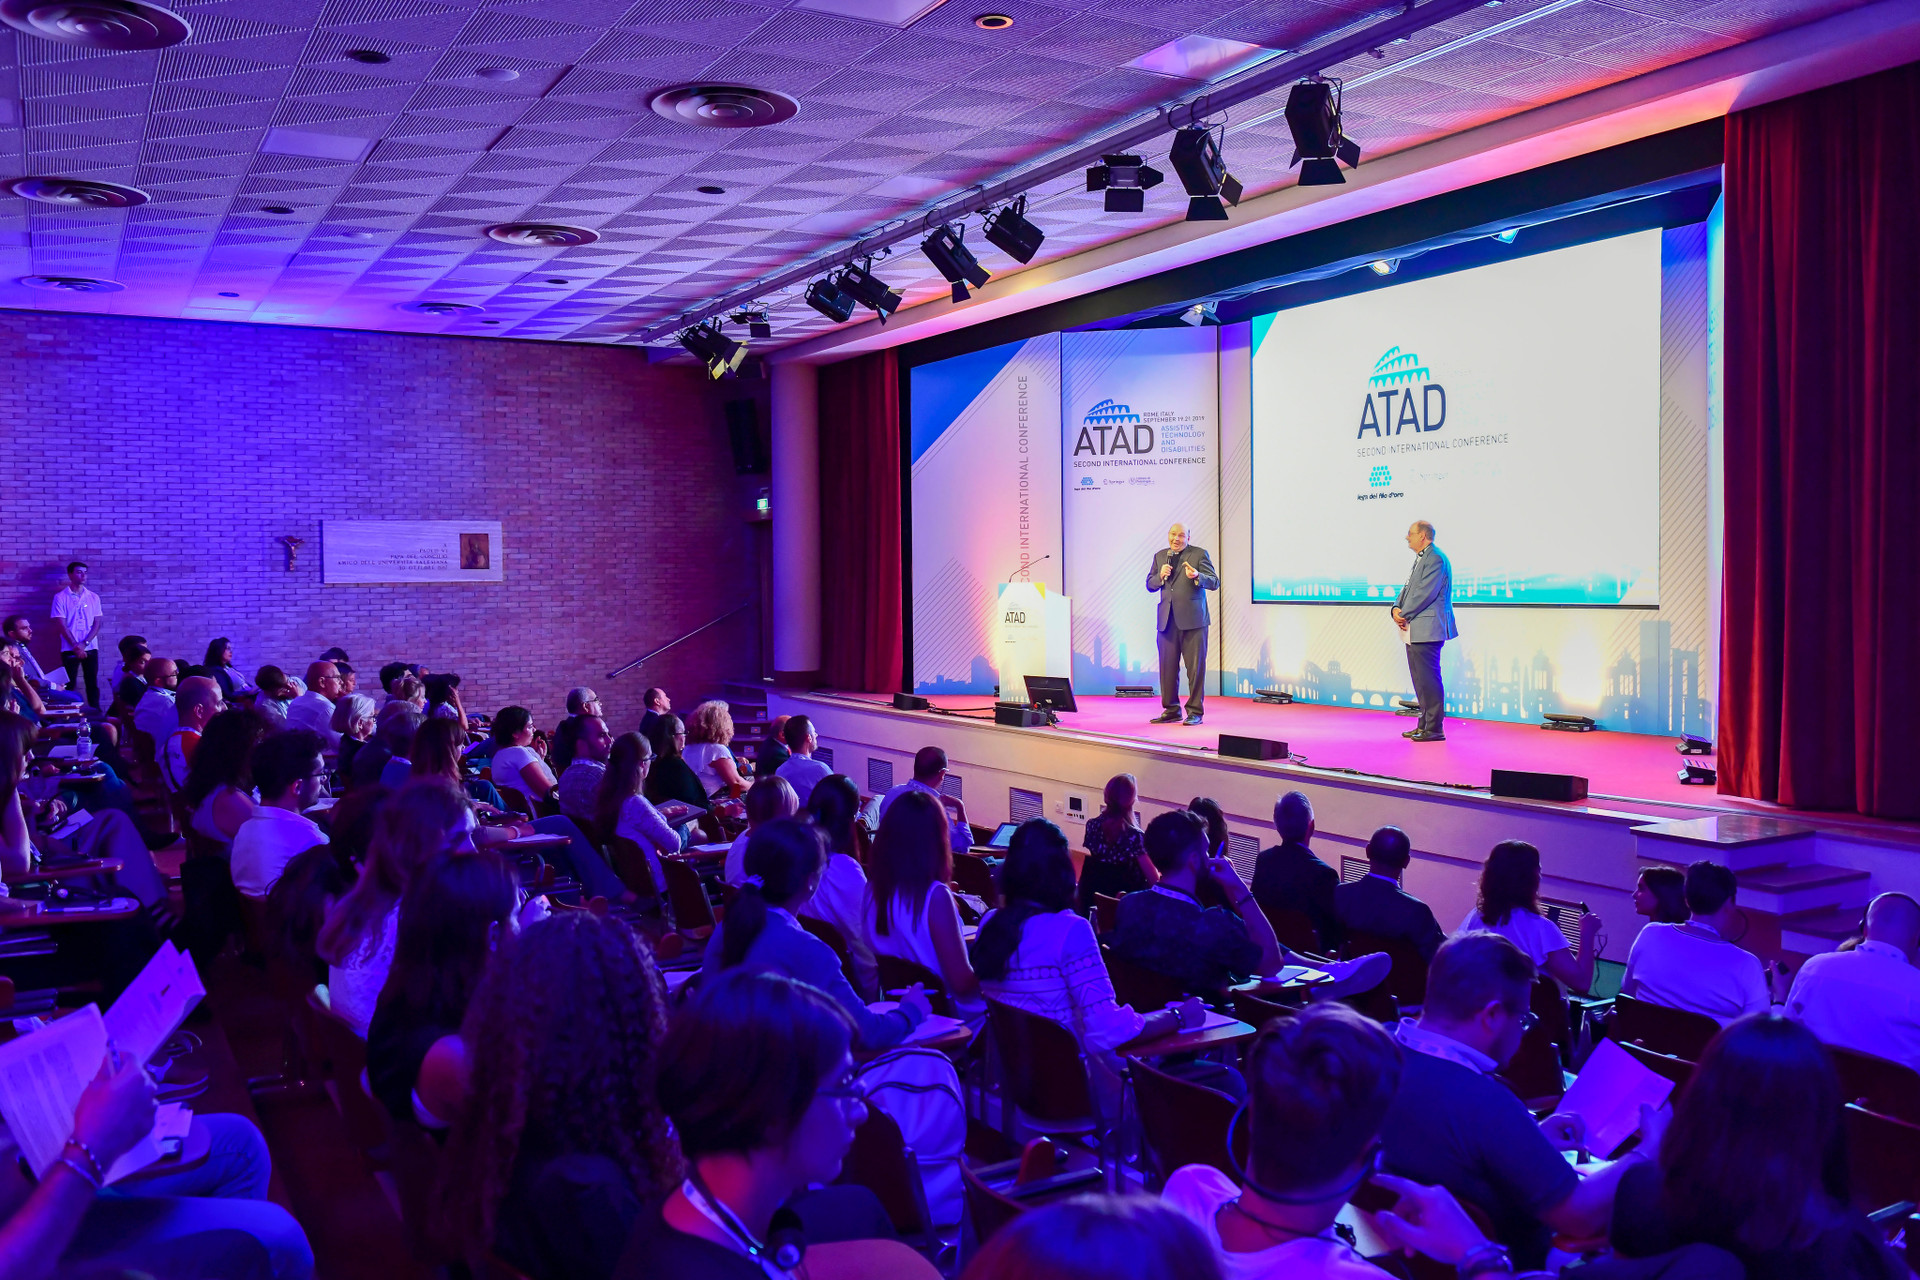 Conferenza ATAD 2019: il pubblico assiste a una delle presentazioni